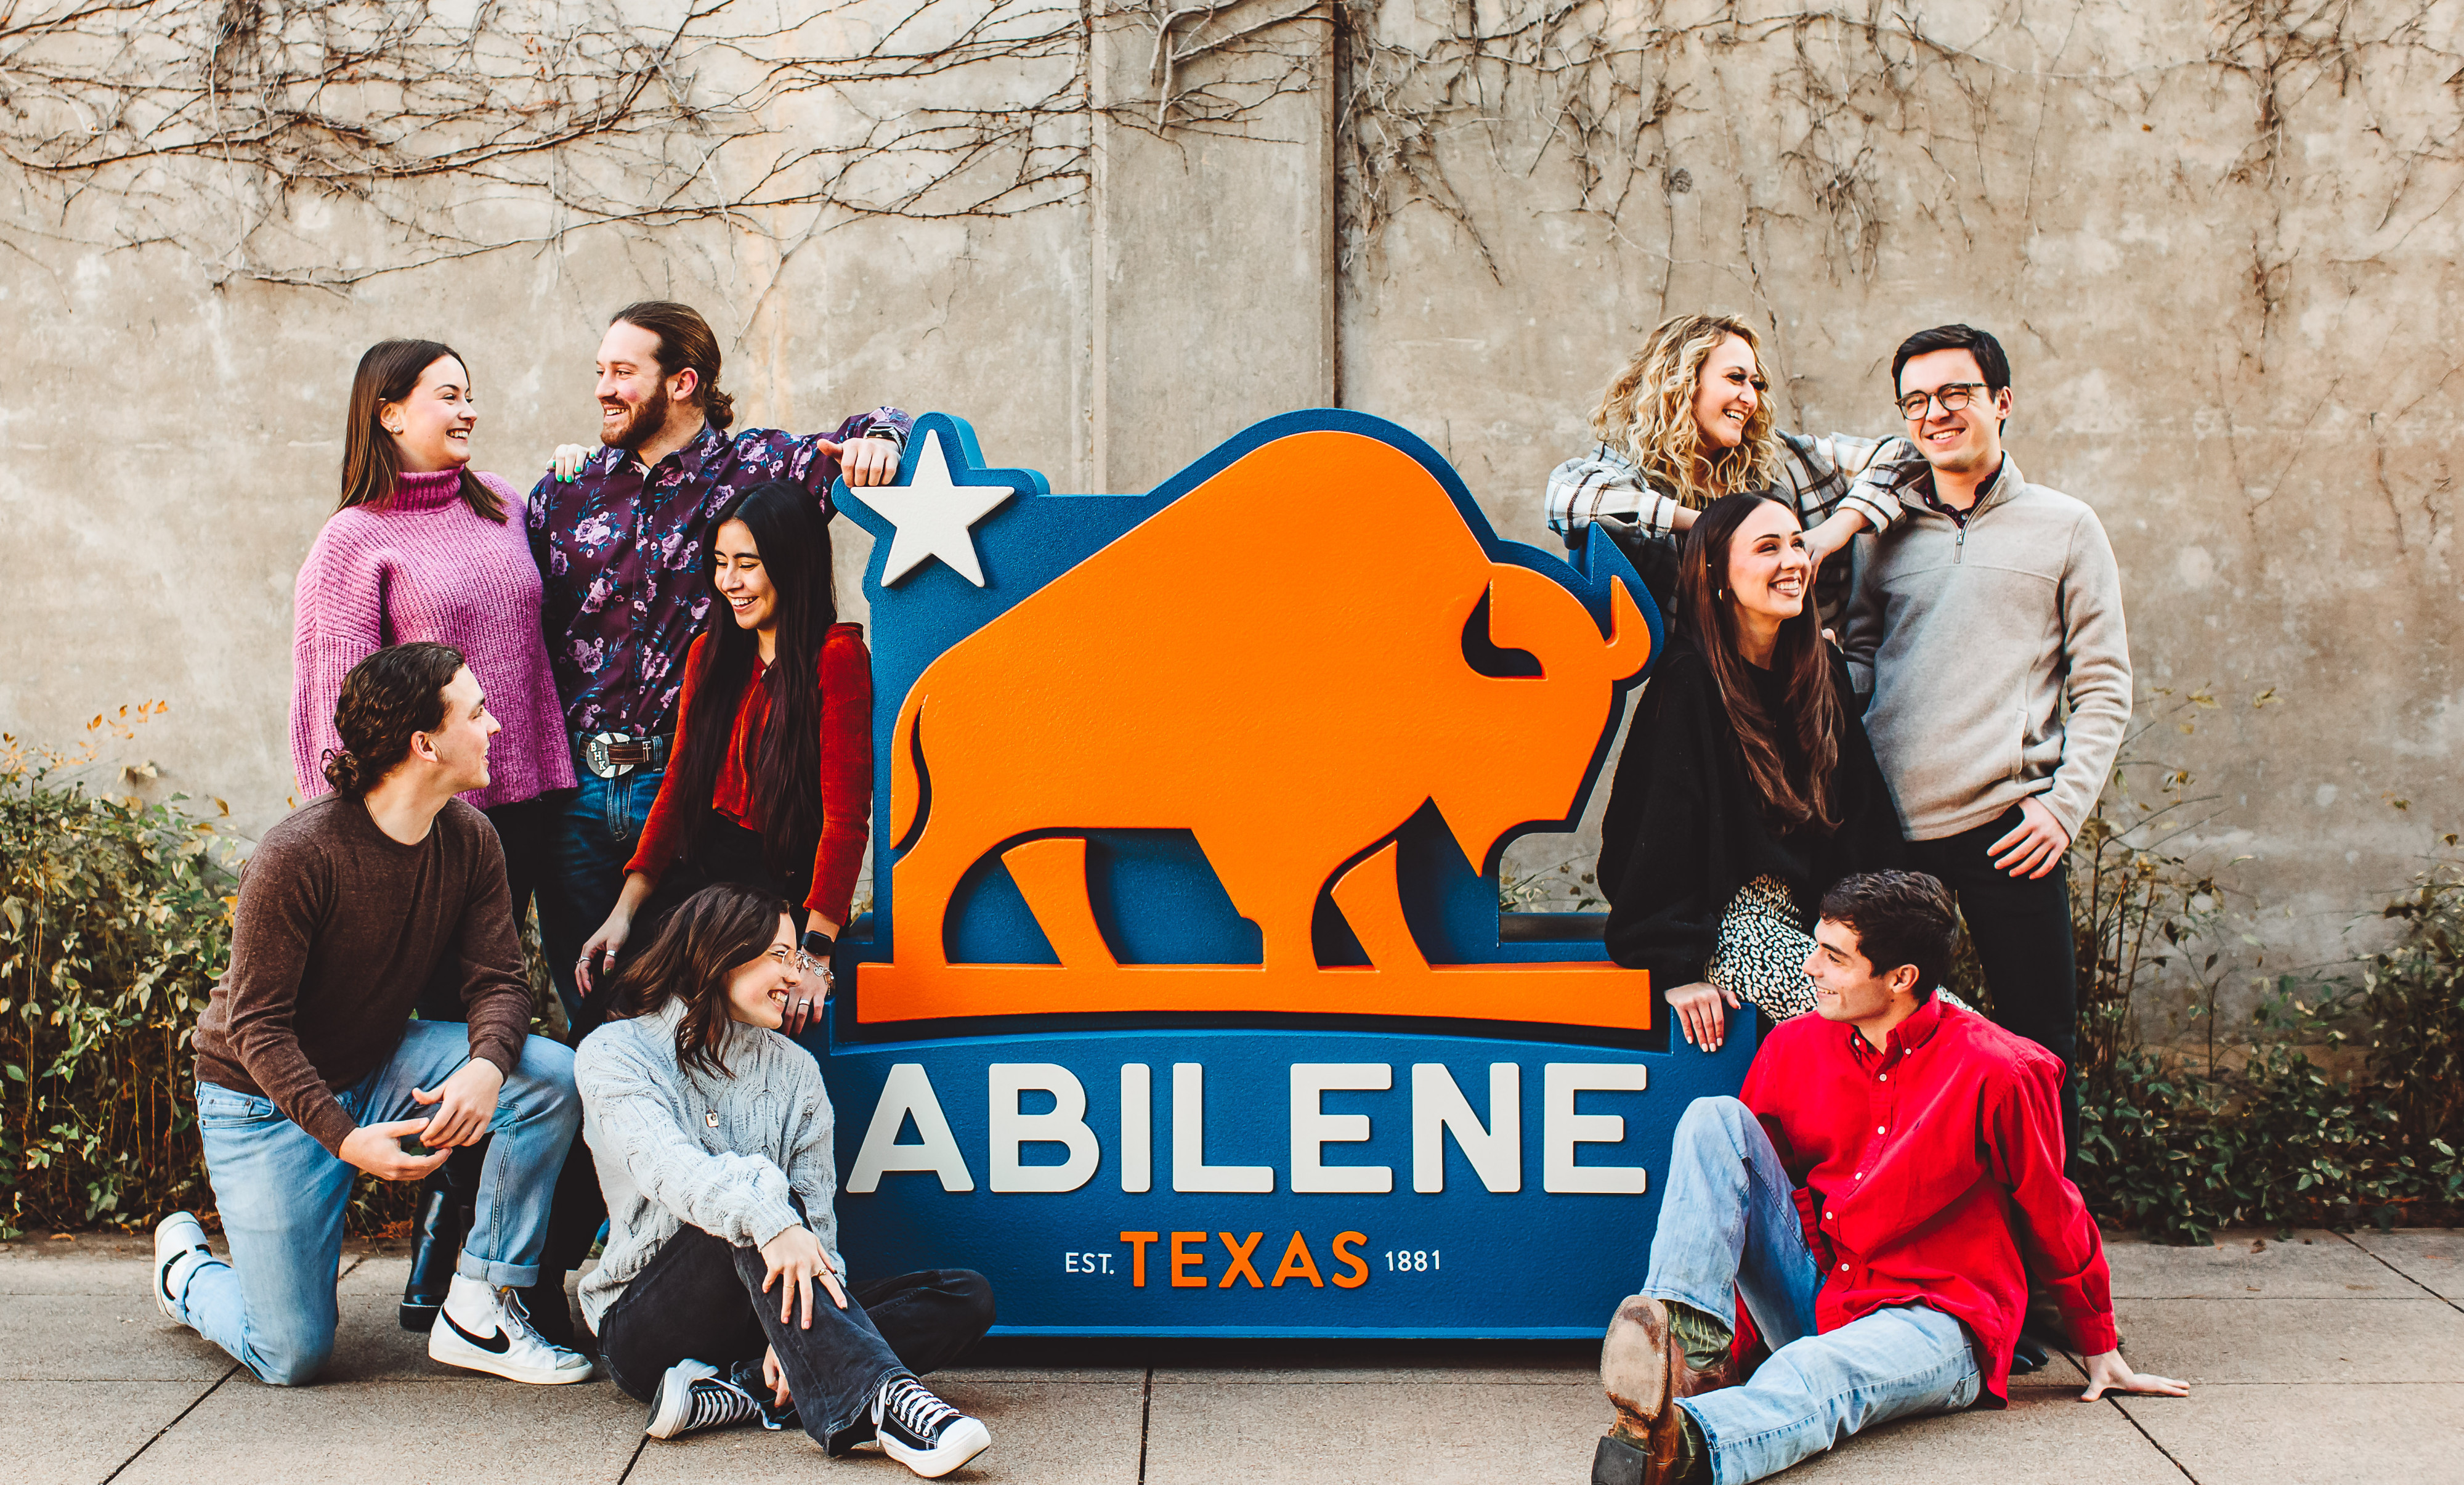 Visit Abilene Texas